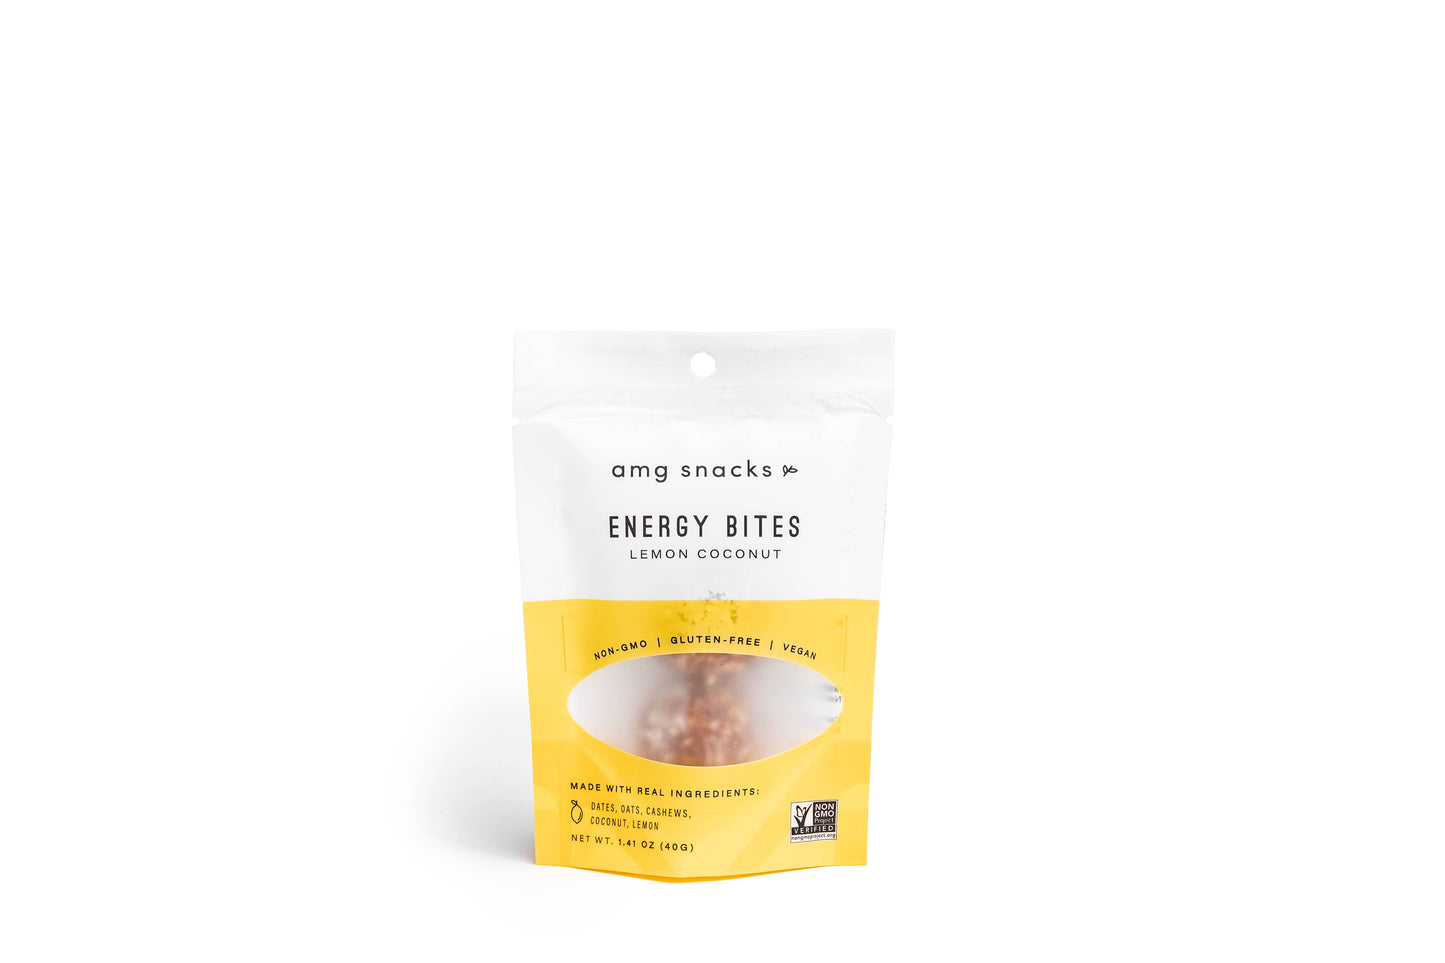 Energy Bites: On-the-go packs